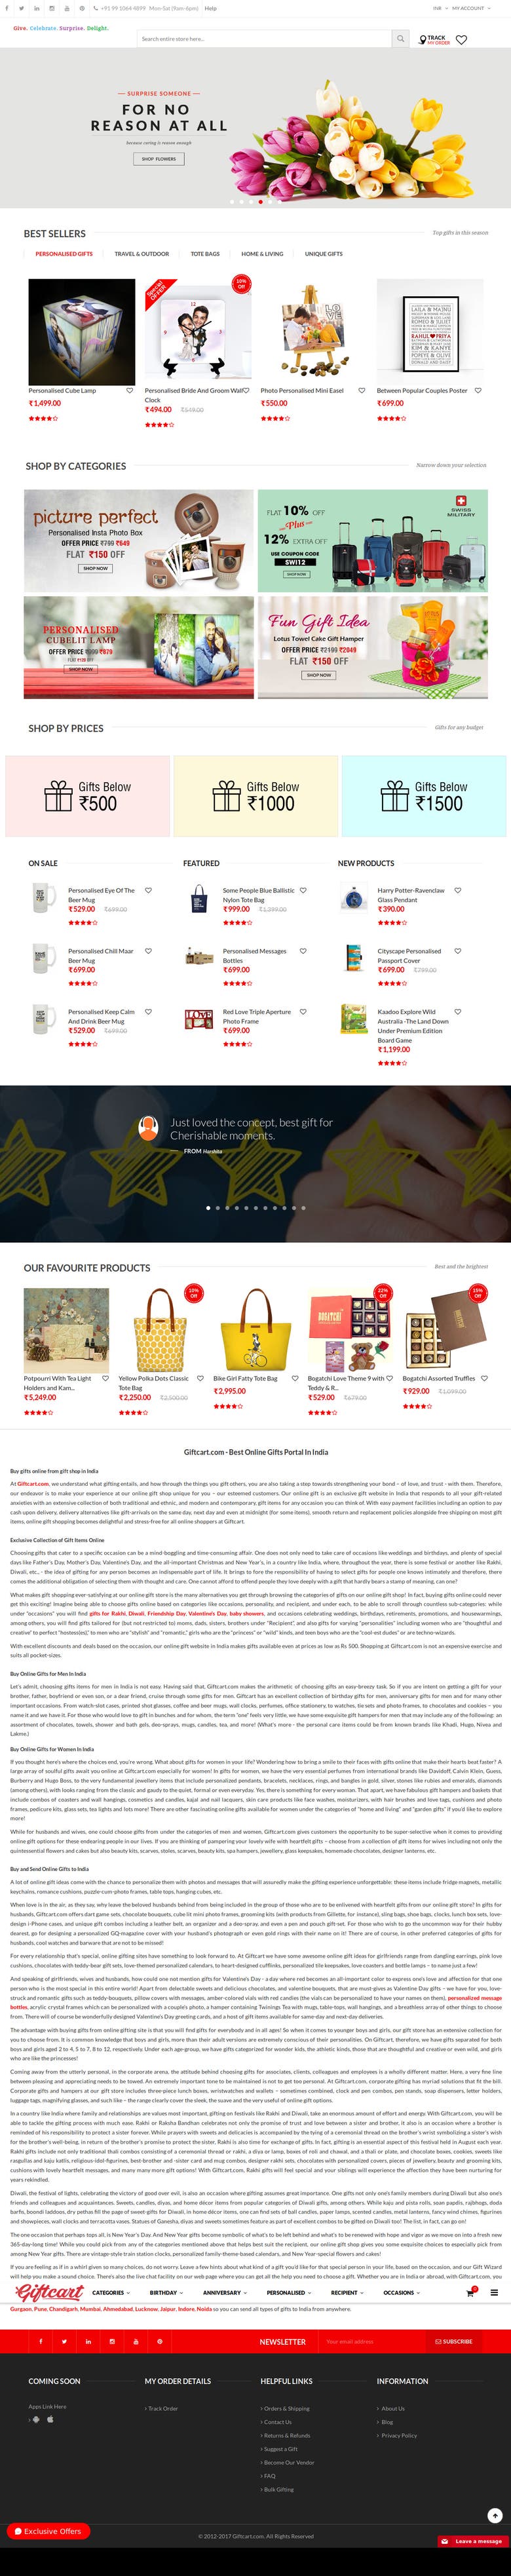 E commerce Website Design